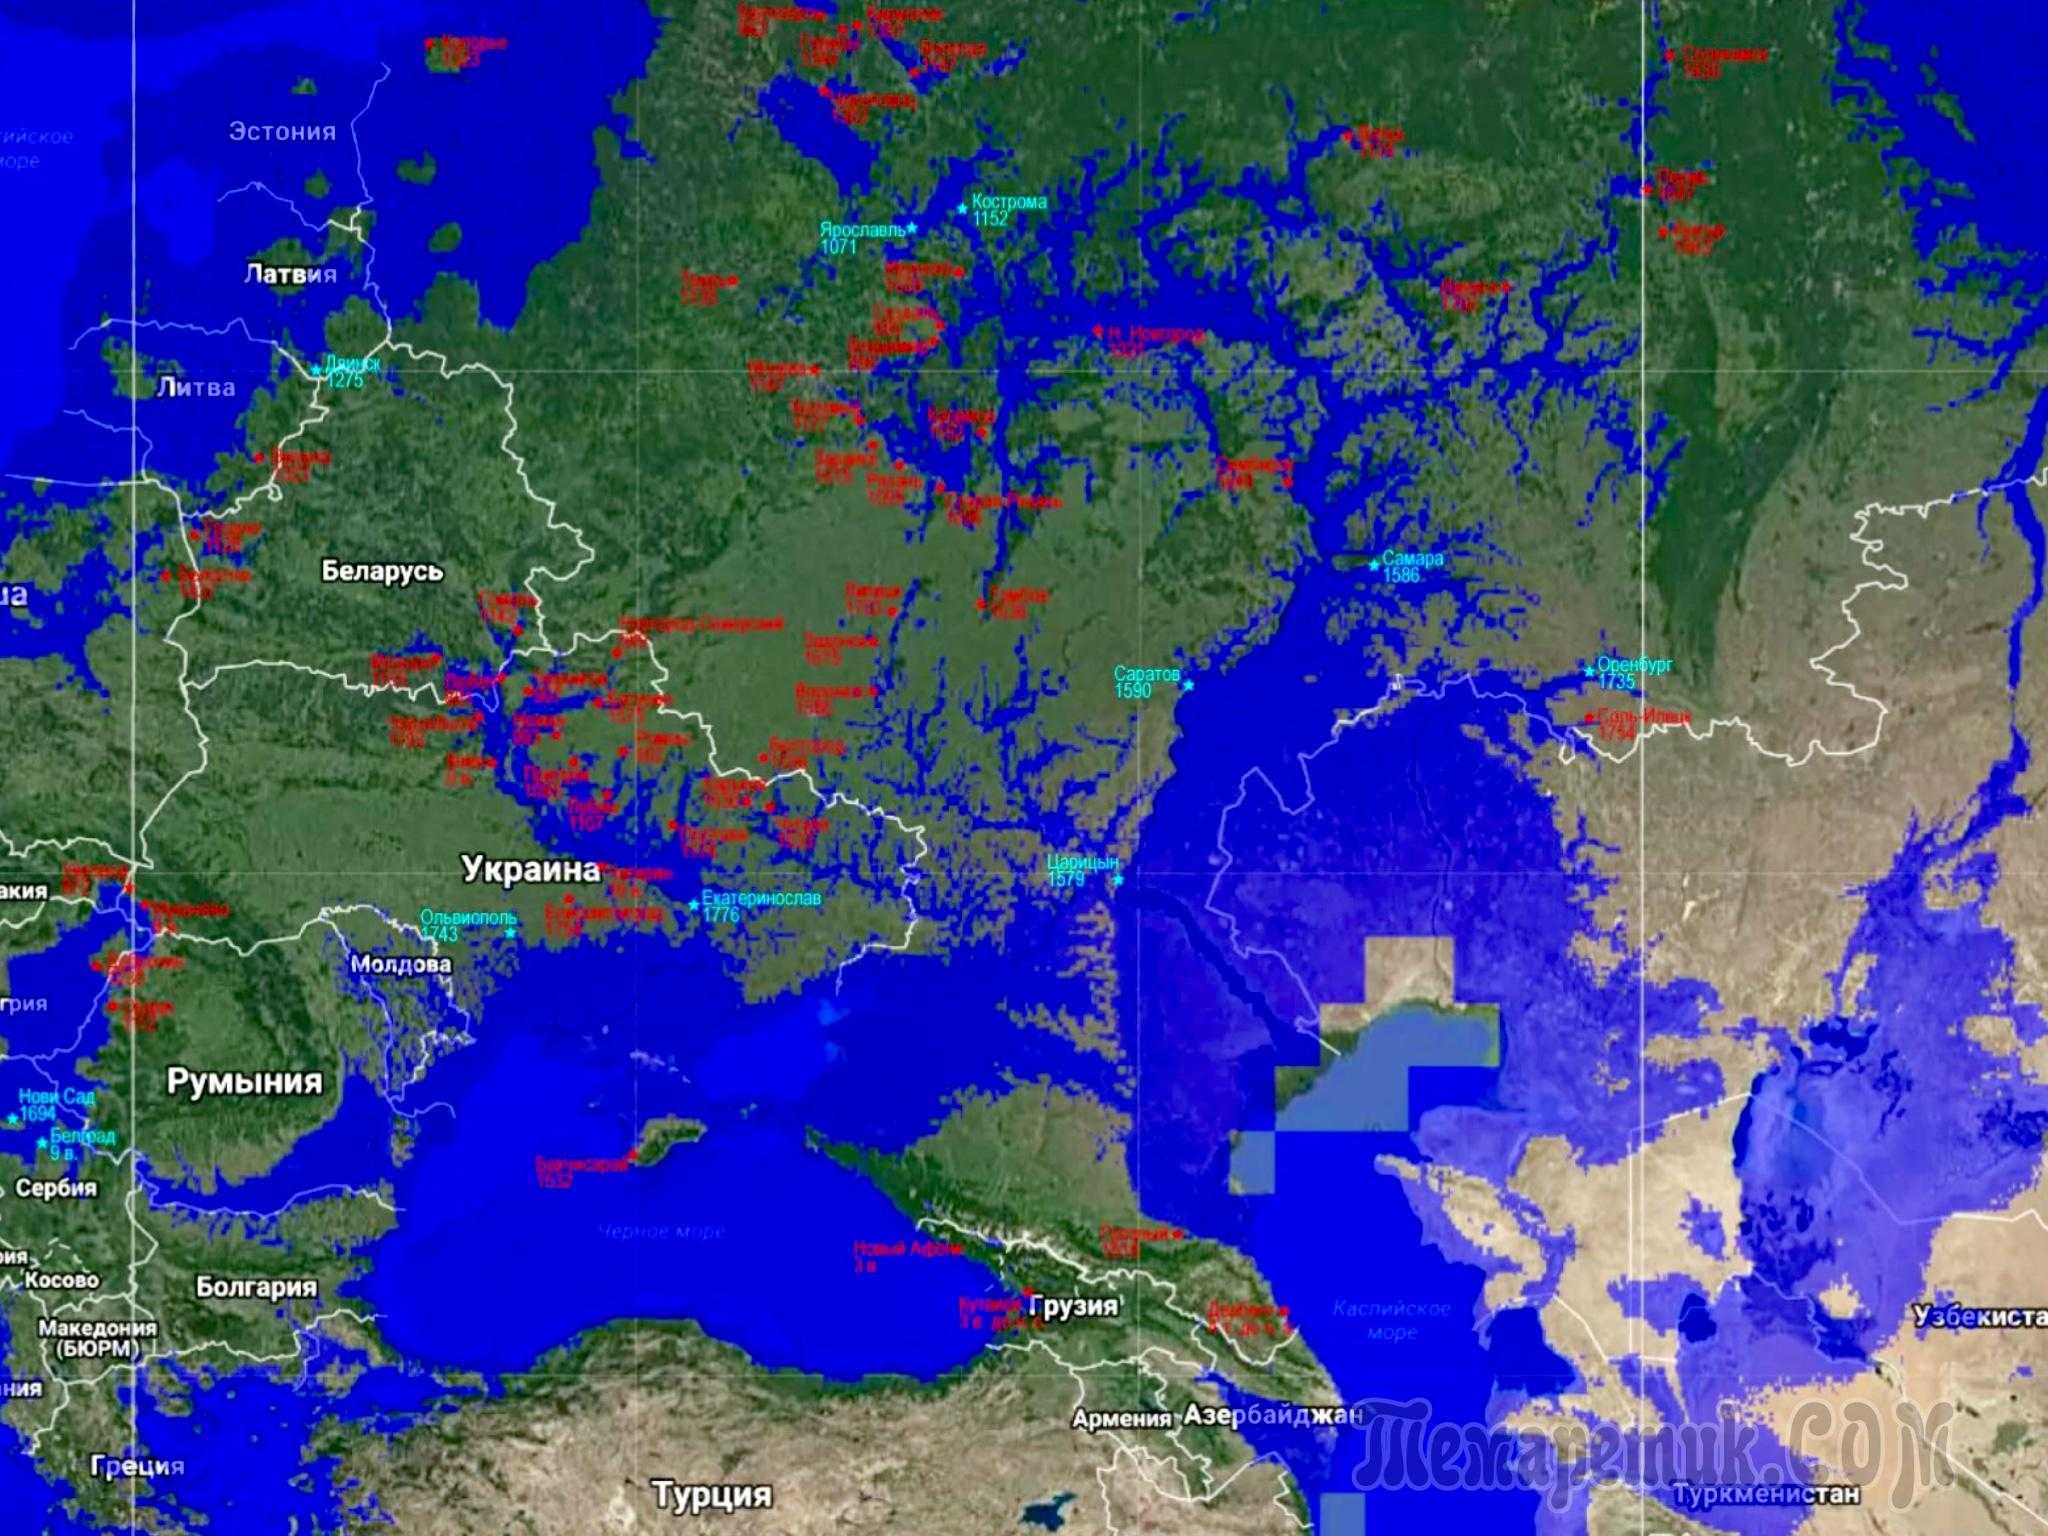 Карта высот санкт петербурга над уровнем. Карта глобального затопления России. Карта России при глобальном затоплении. Карта России после глобального затопления. Карта Кейси затопления земли.